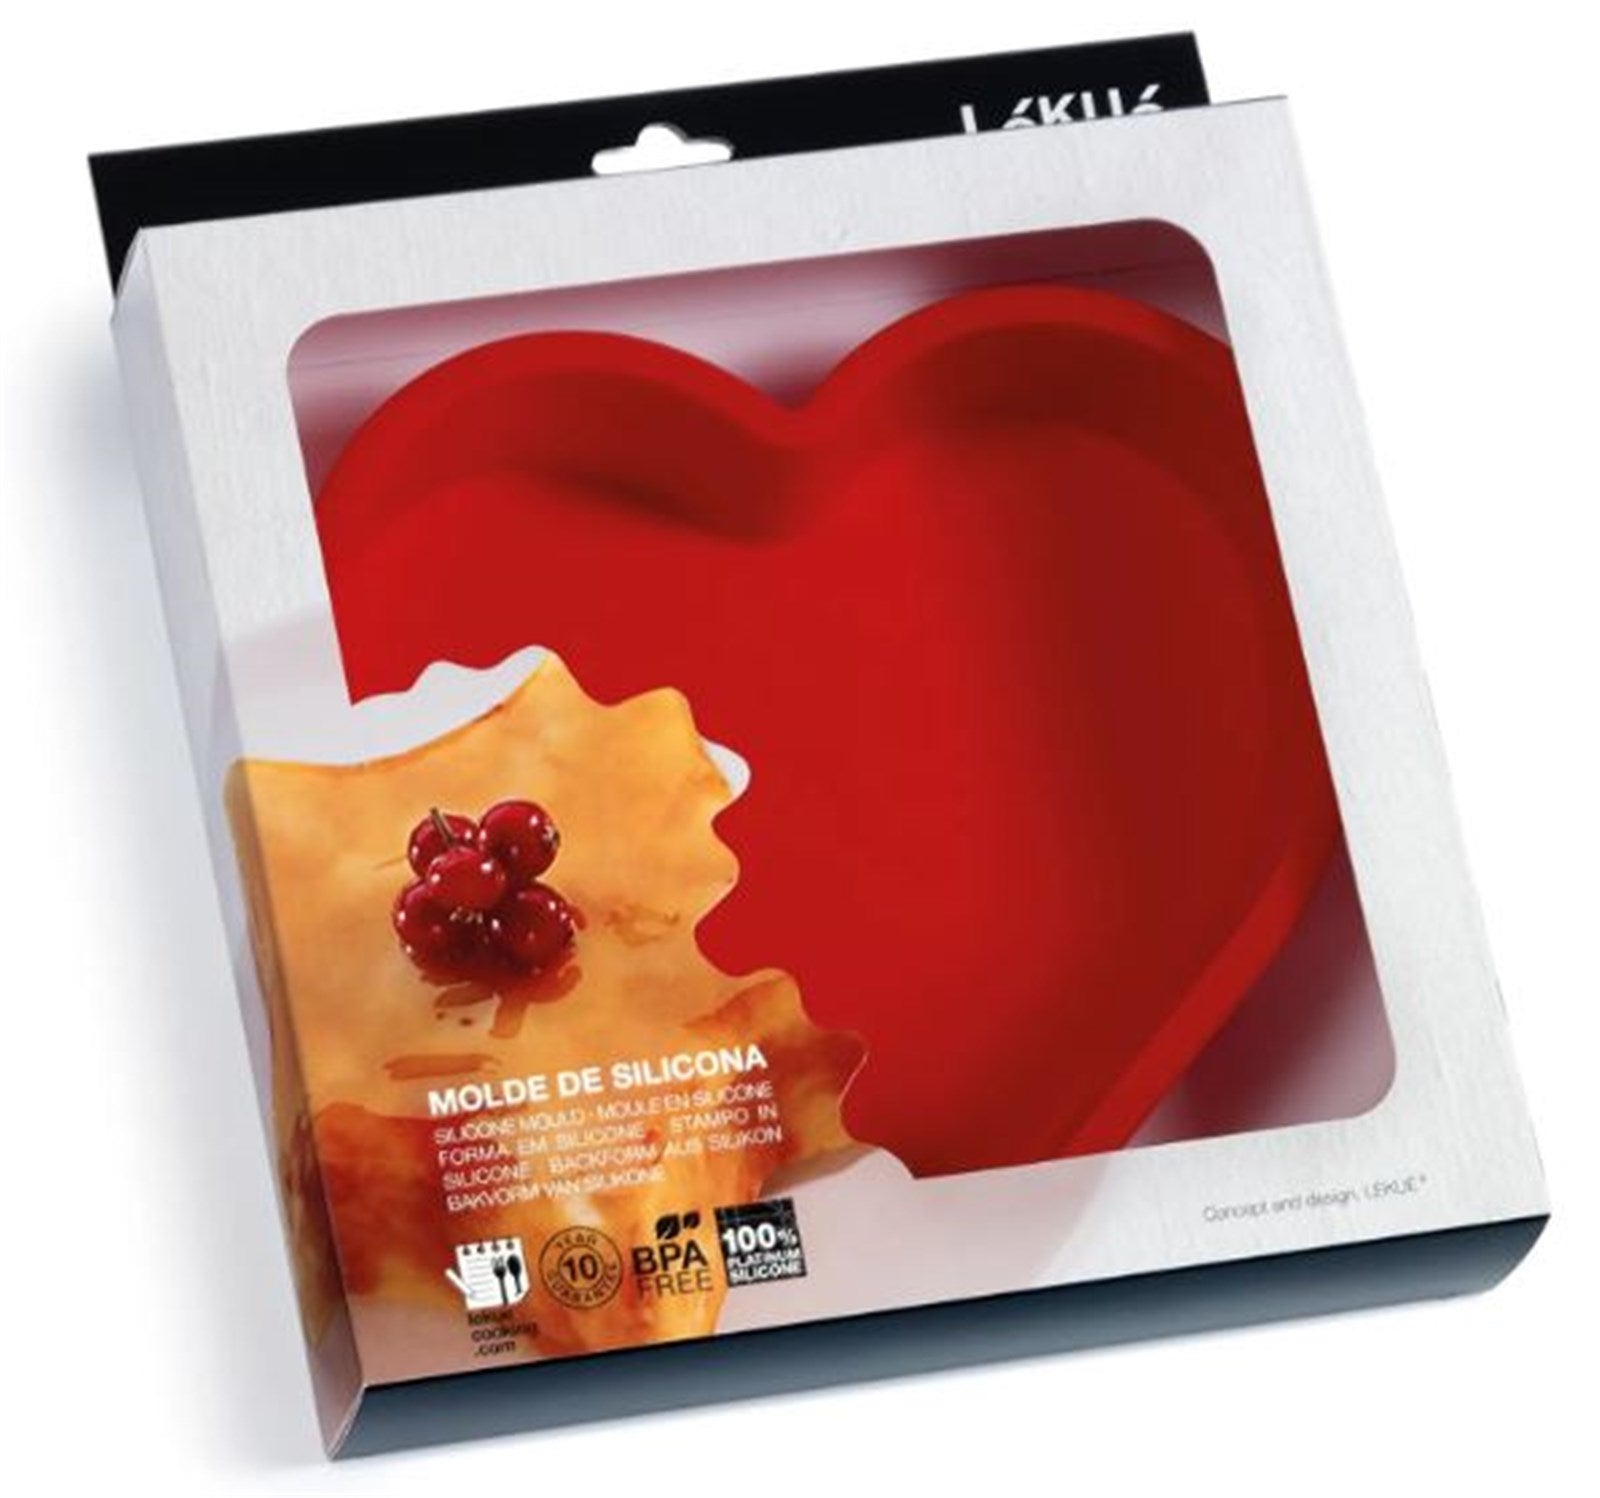 Backform Herz Rot, 1.3 lt., 23x21 cm in Rot präsentiert im Onlineshop von KAQTU Design AG. Backen ist von Lékué